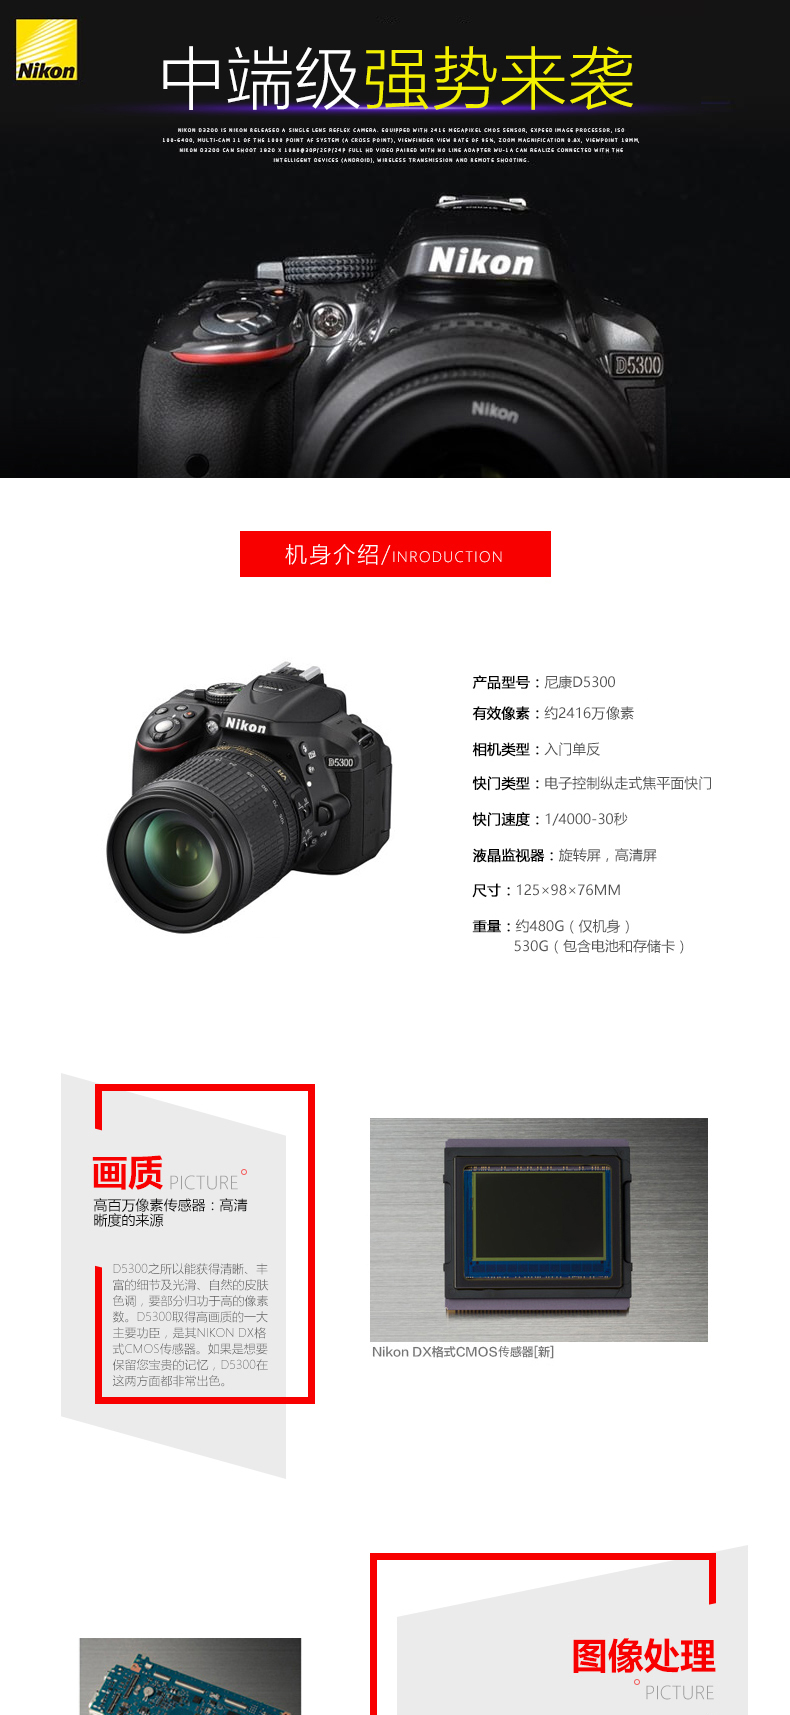 尼康(Nikon) D5300（18-55mm+35mmF1.8G) 双镜头套装 2416万像素 翻转屏 WIFI